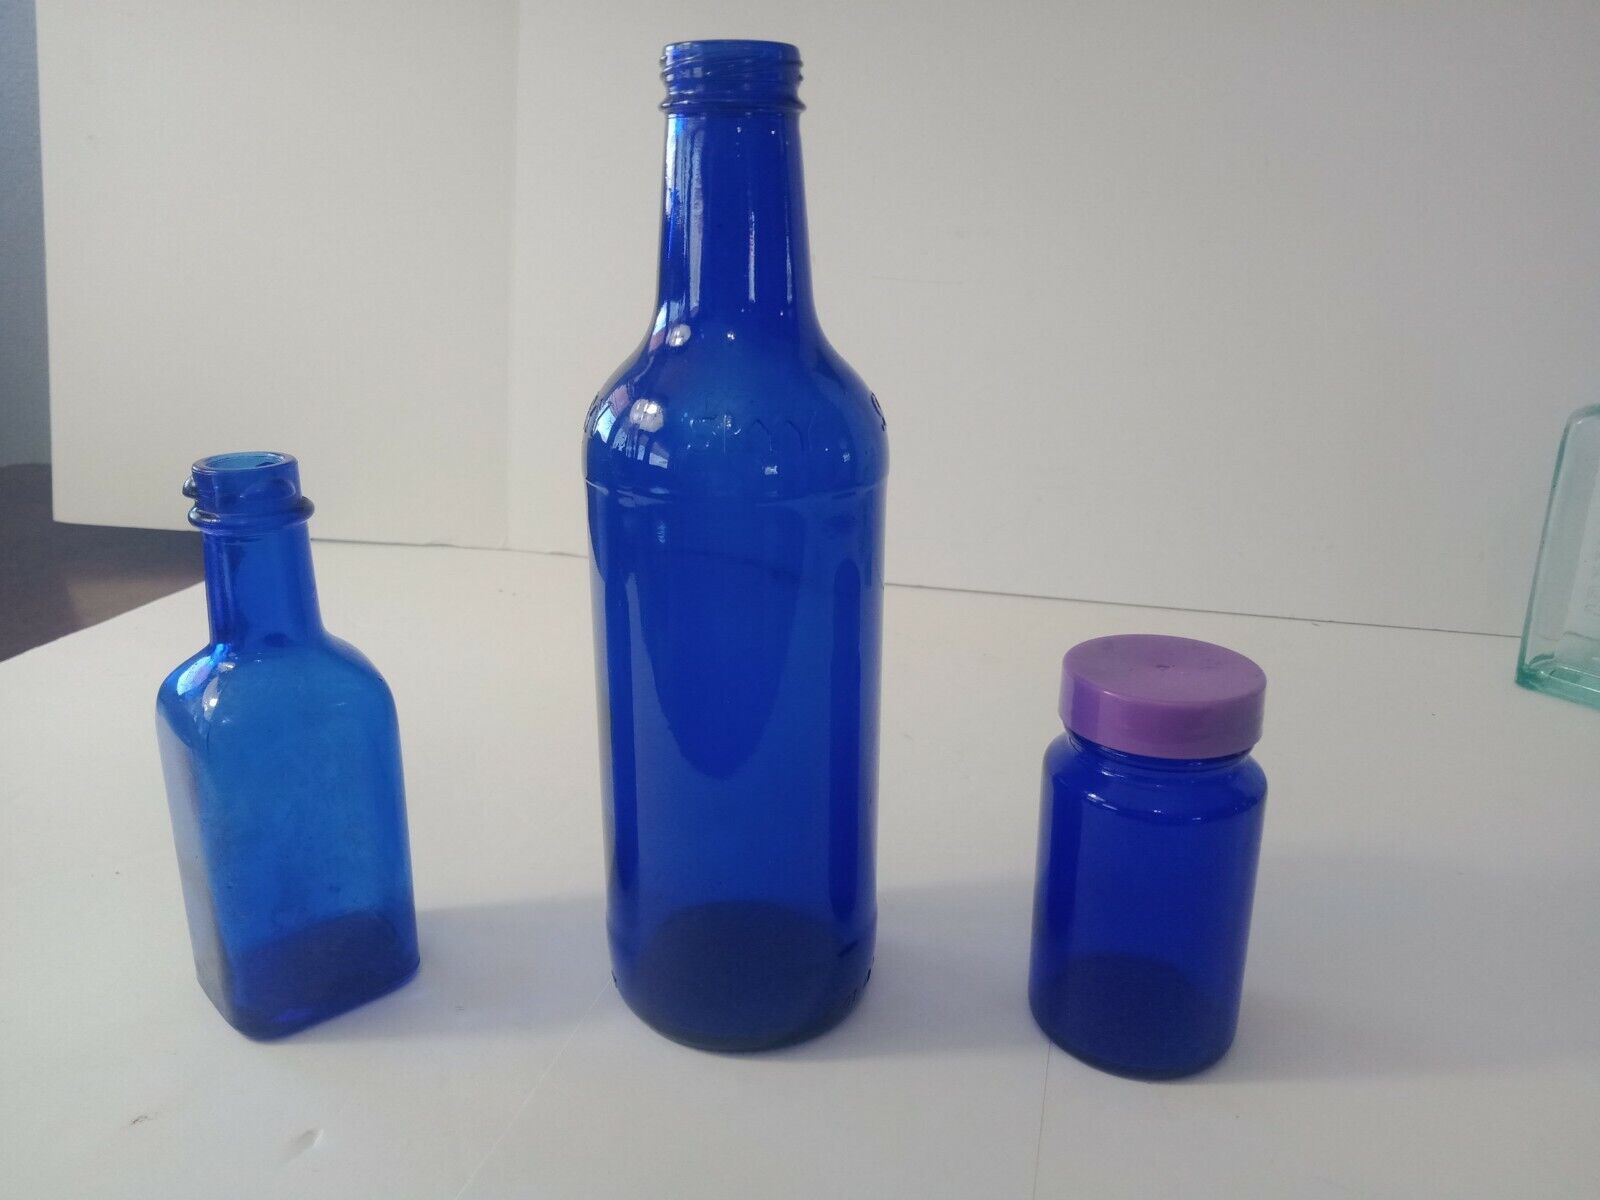 3 Cobalt Blue Glass Bottles Jar Sky Vodka